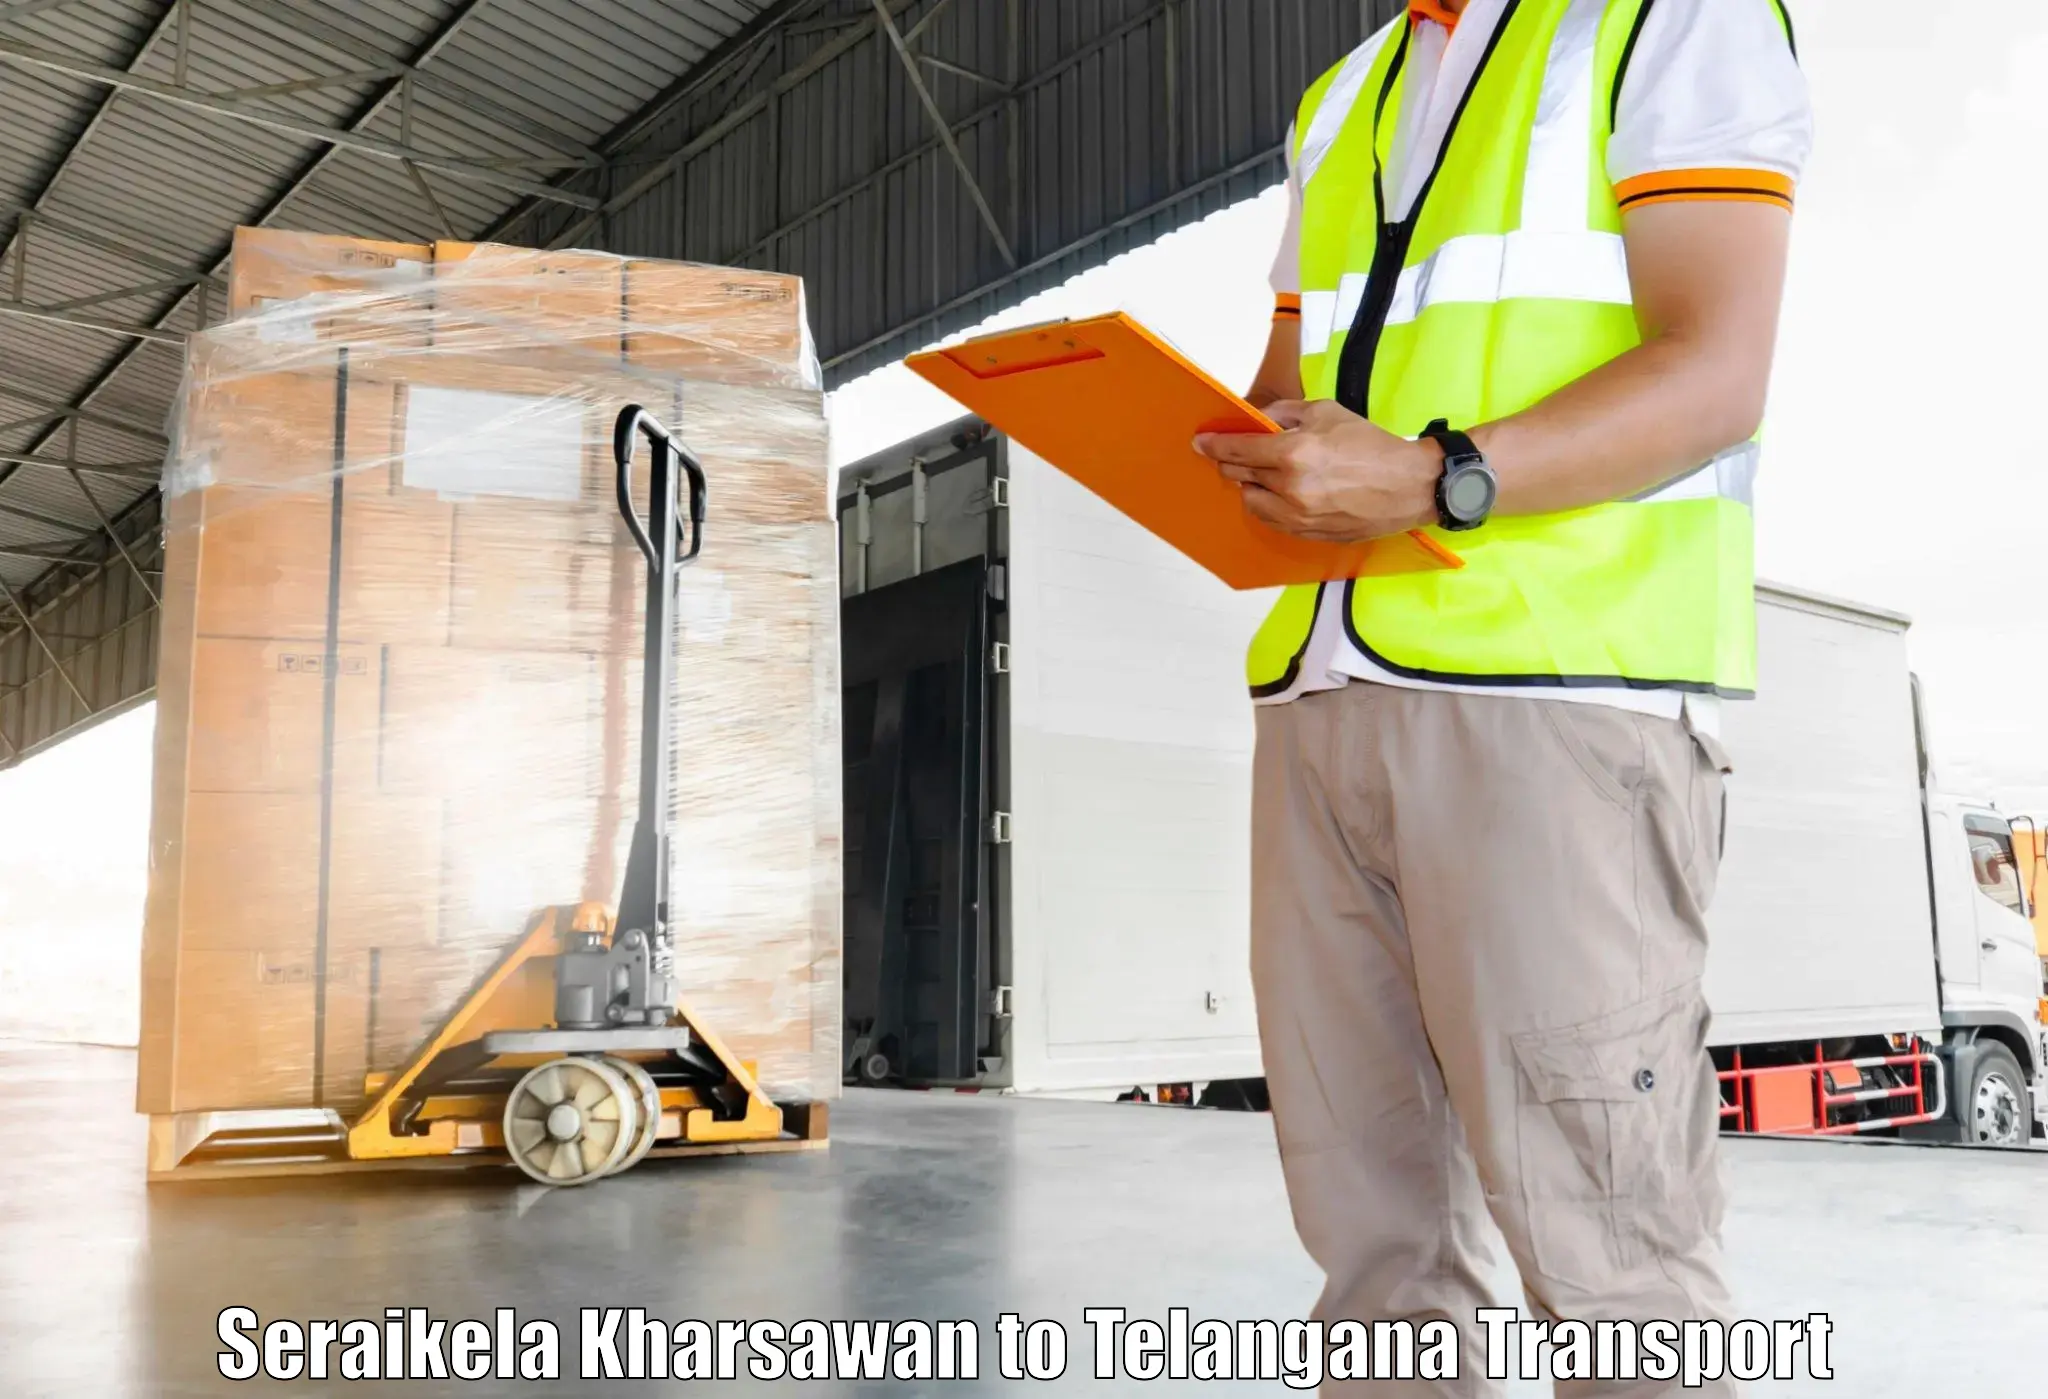 Furniture transport service Seraikela Kharsawan to Telangana